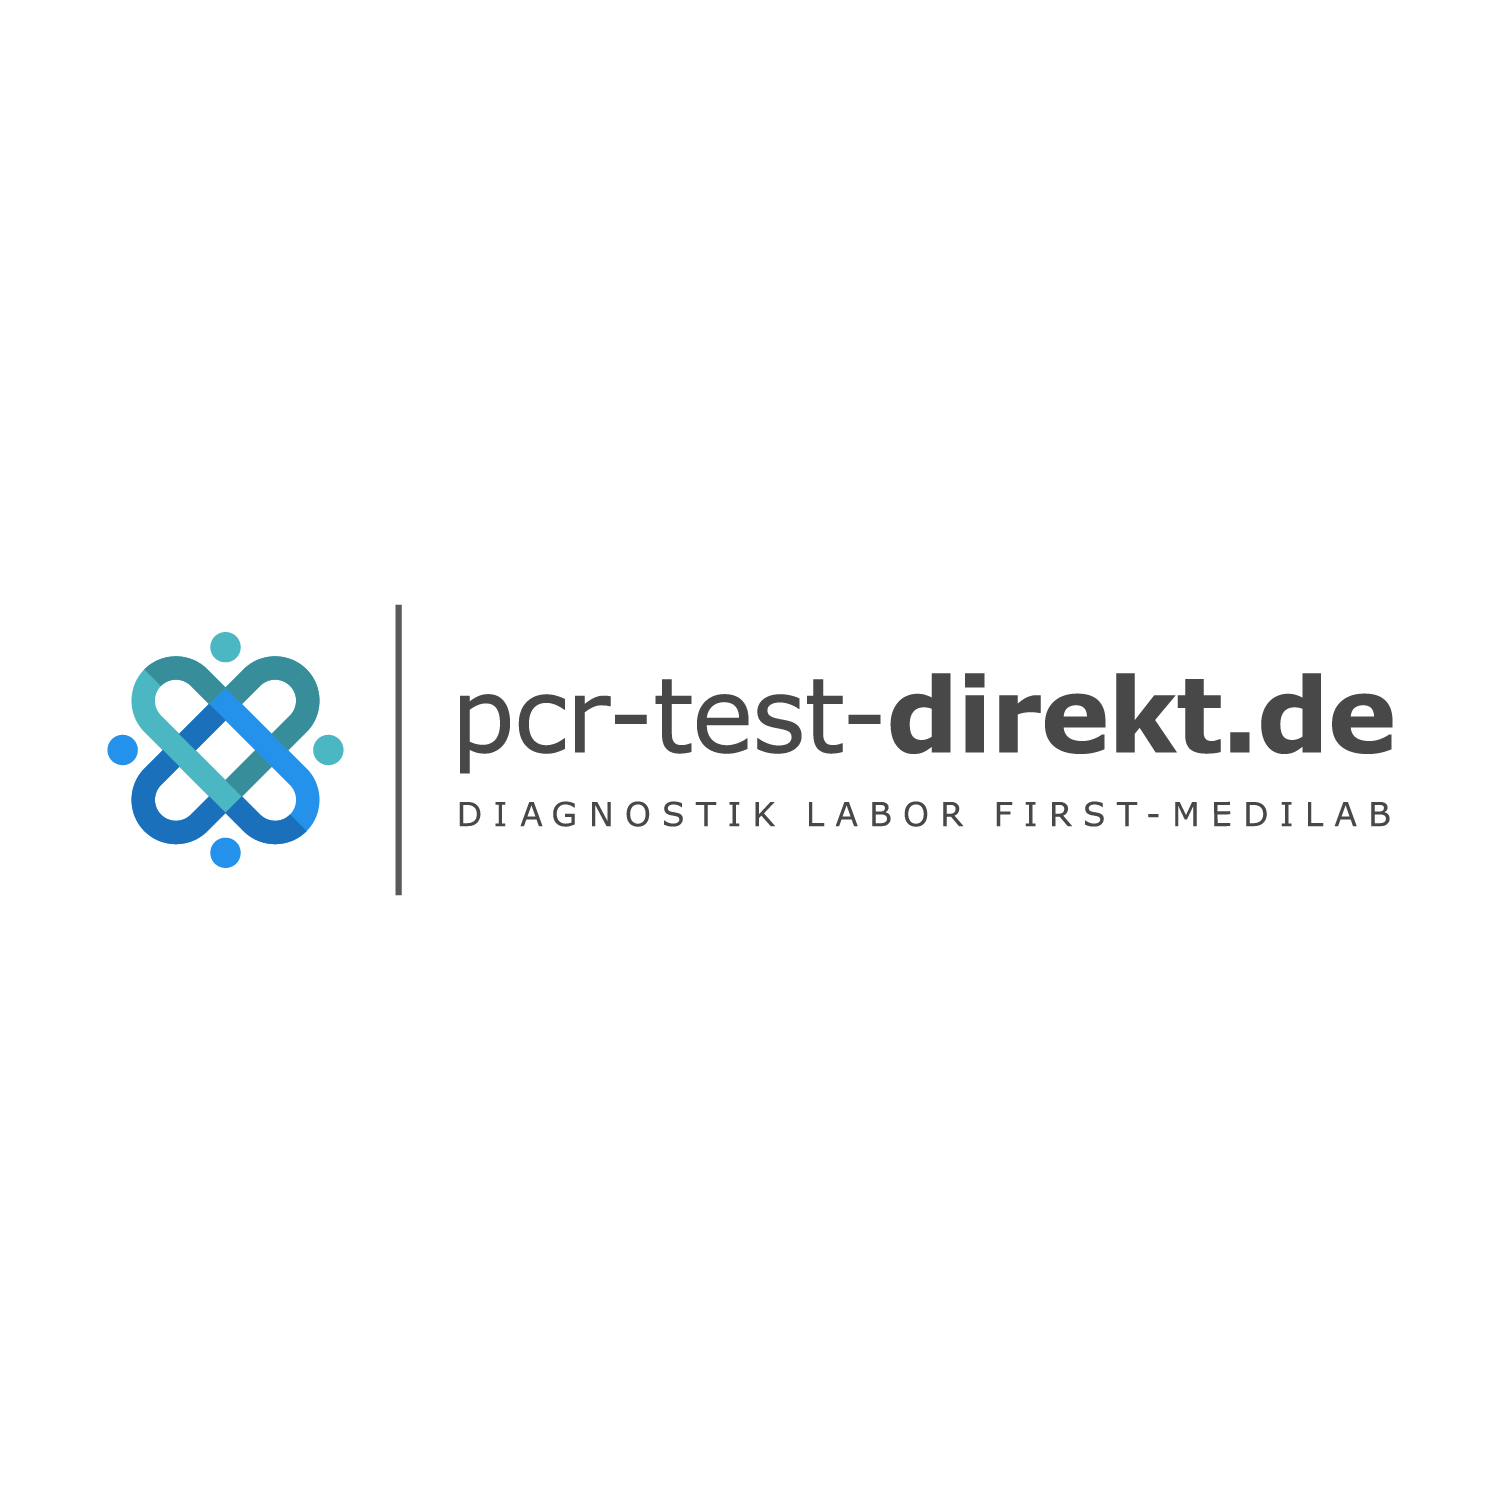 PCR-Testzentrum Freiburg im Breisgau Hallenbad Haslach | pcr-test-direkt.de